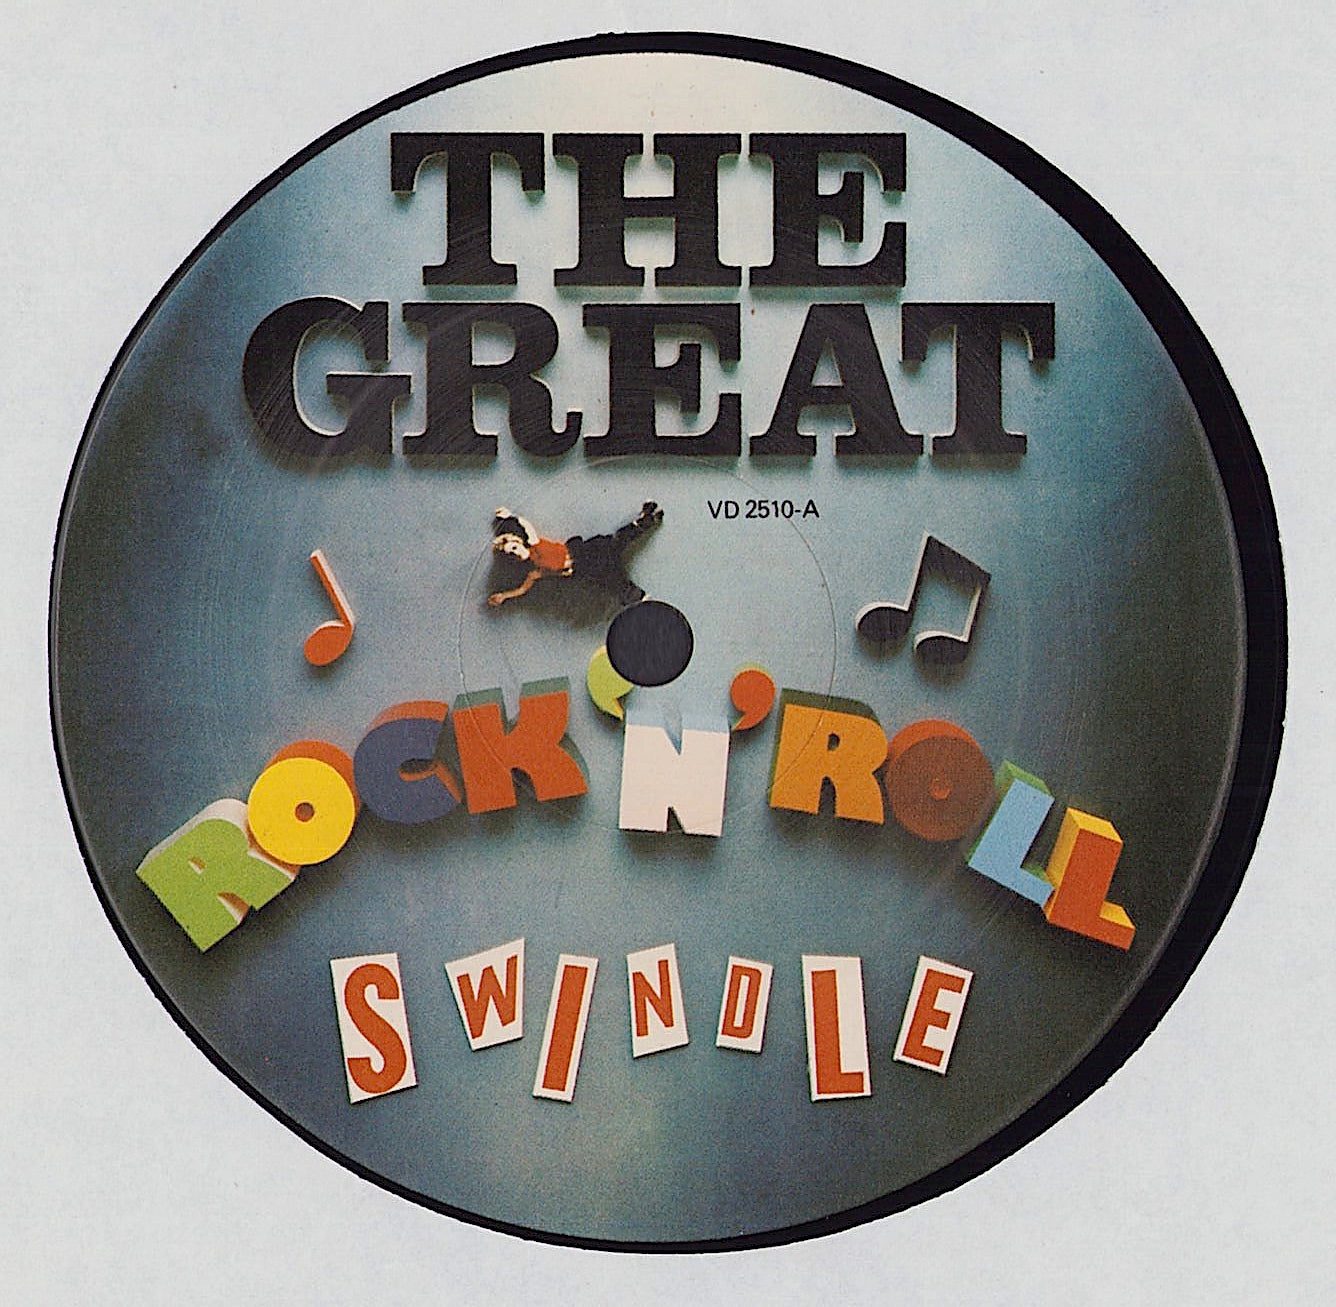 Sex Pistols ‎- The Great Rock 'N' Roll Swindle (Vinyl 2LP)